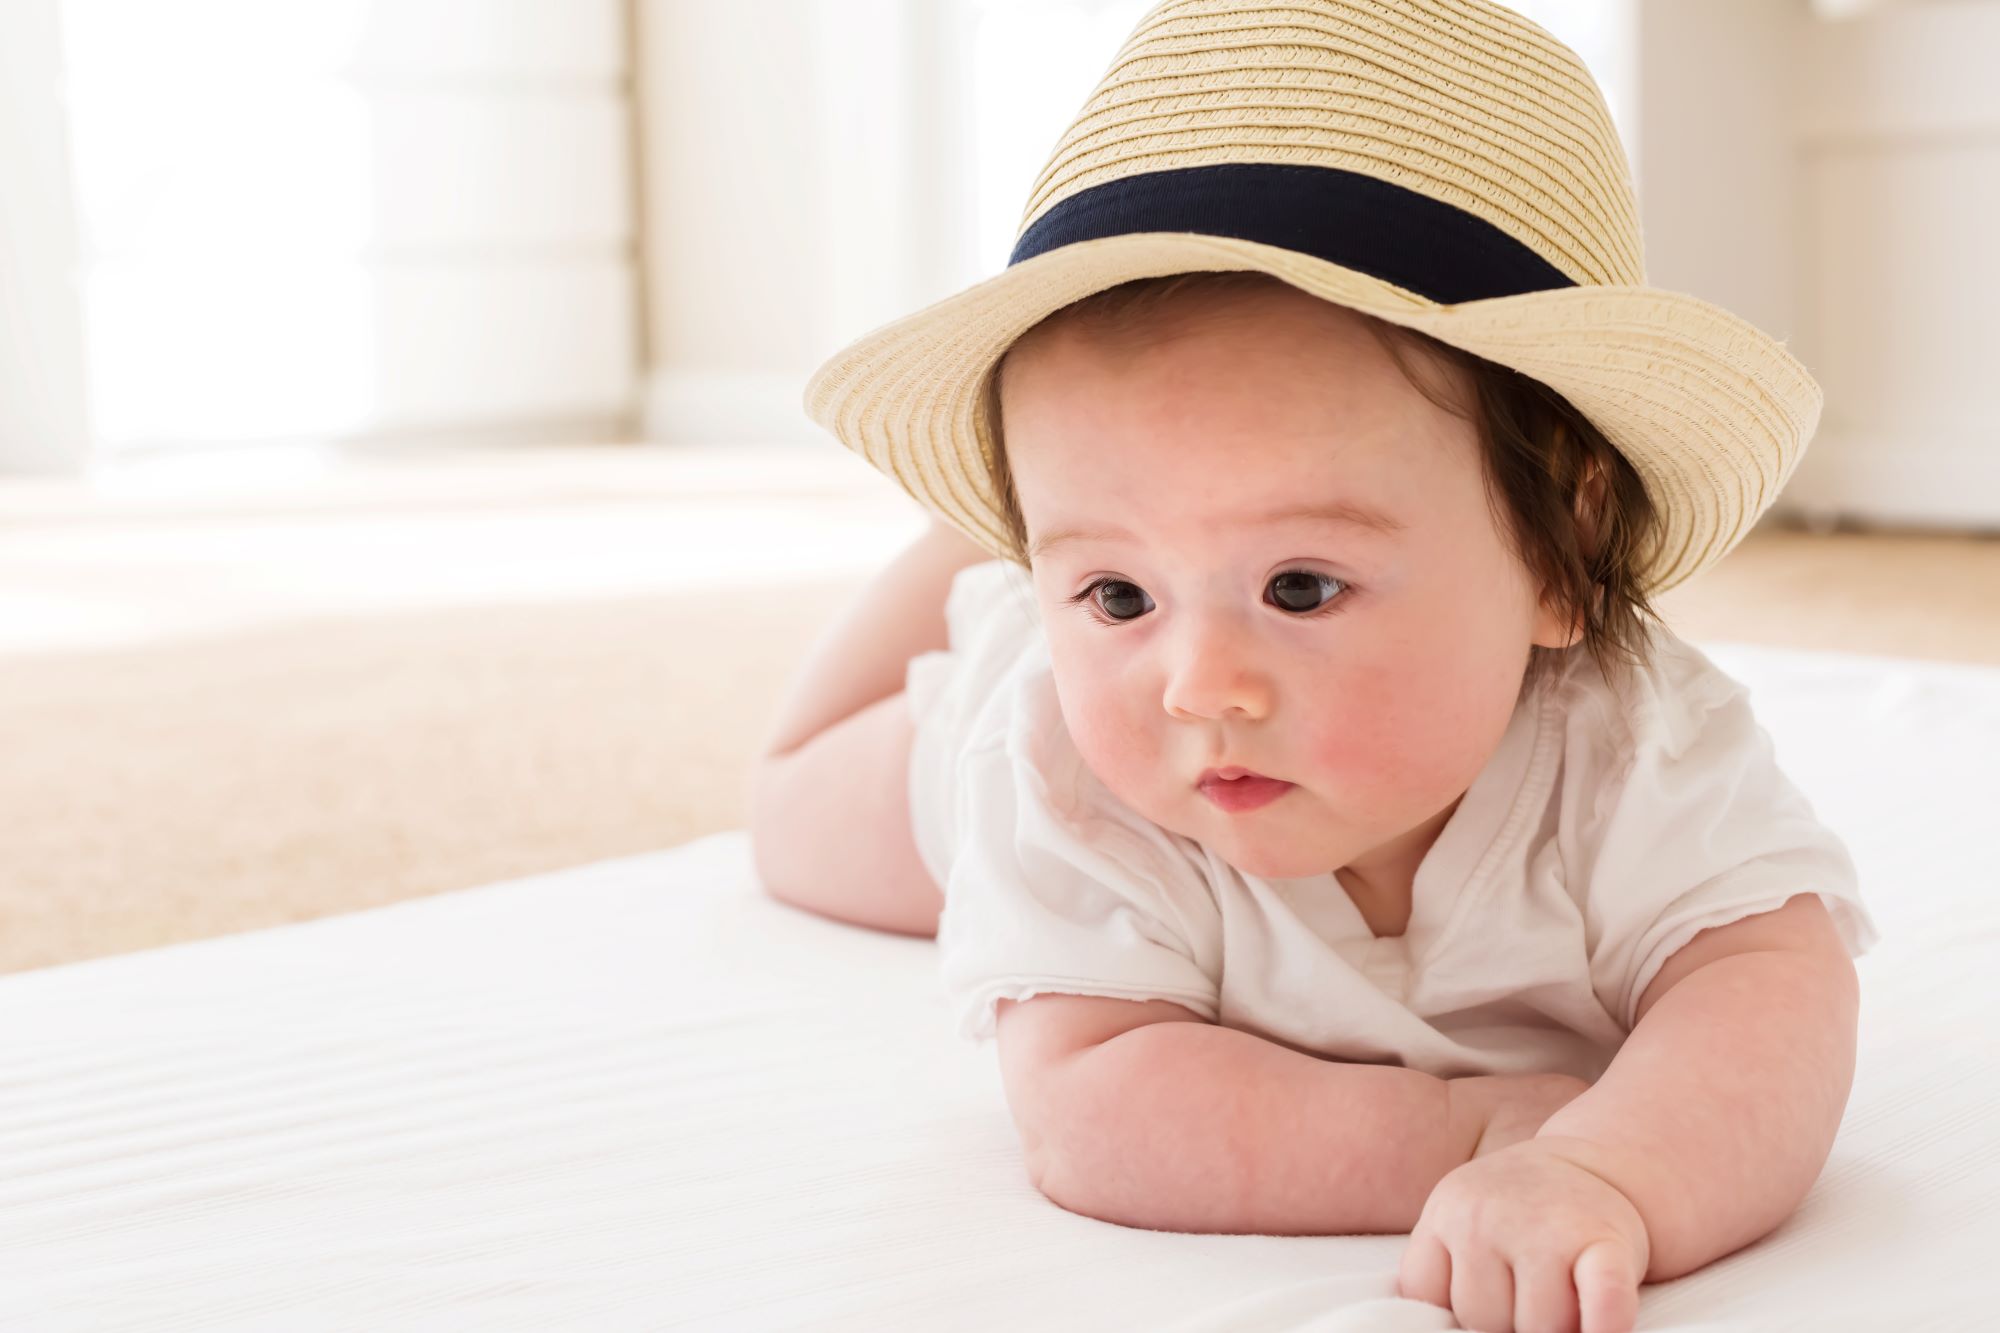 In viaggio con il bebè, guida pratica dei neonatologi per vacanze sicure